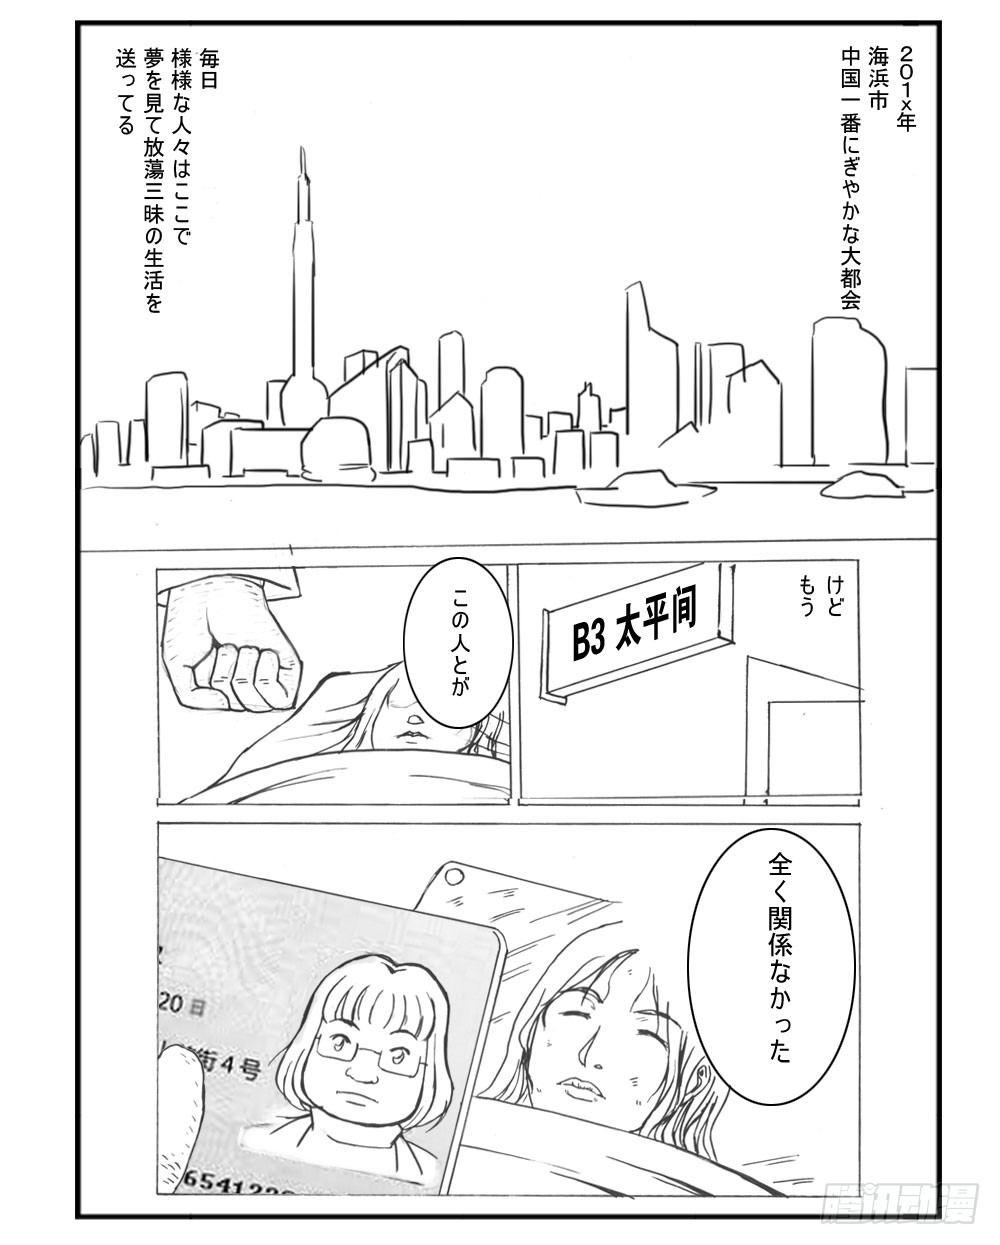 日在日本 - 332 未完的漫畫(1) - 1